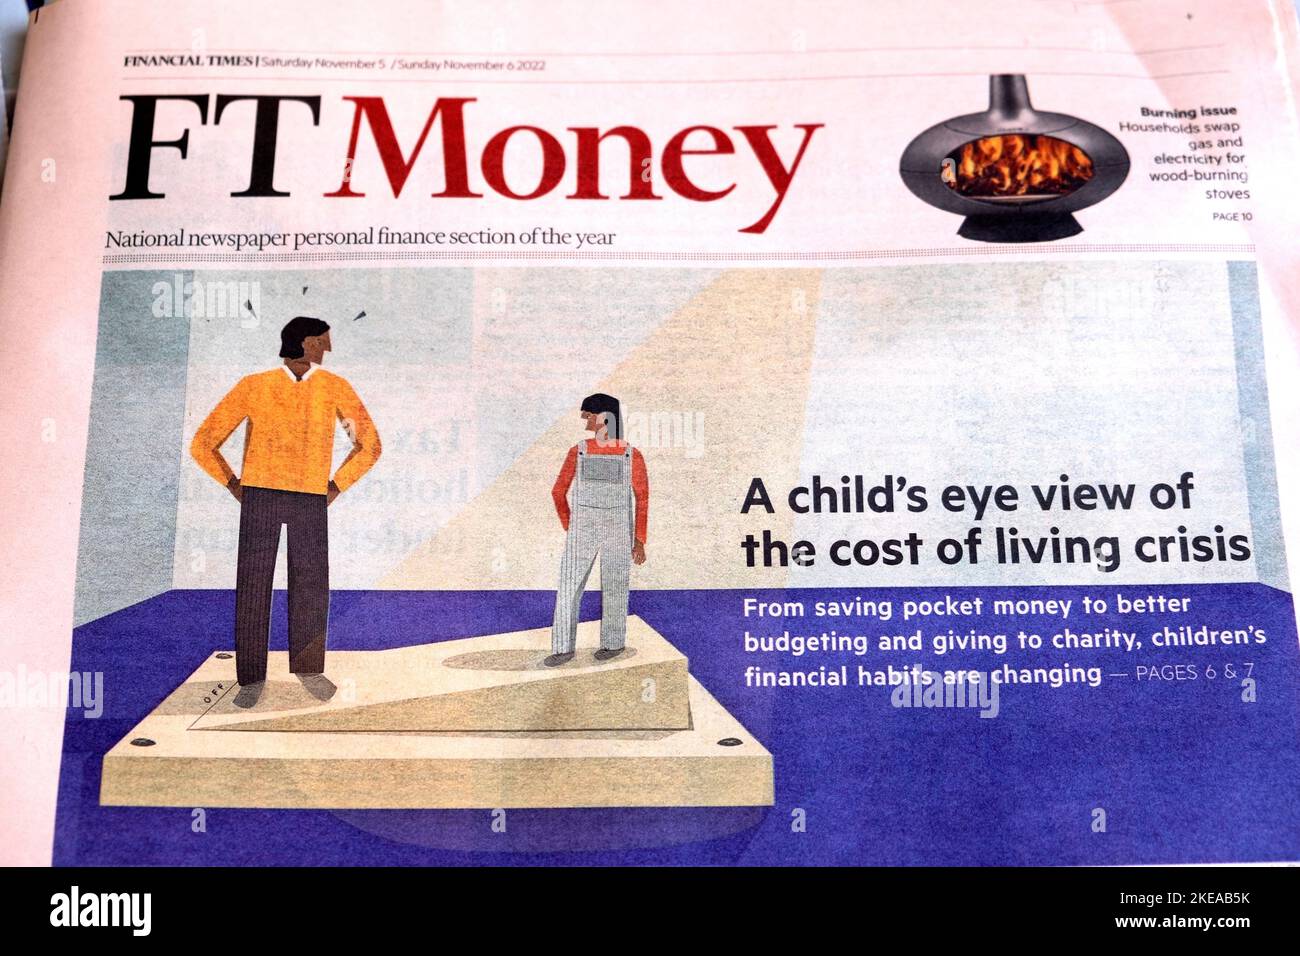 Financial Times Zeitung Schlagzeile Titelseite FTMoney Lebenshaltungskosten Krise Kinder Artikel am 5. November 2022 London England Großbritannien Stockfoto